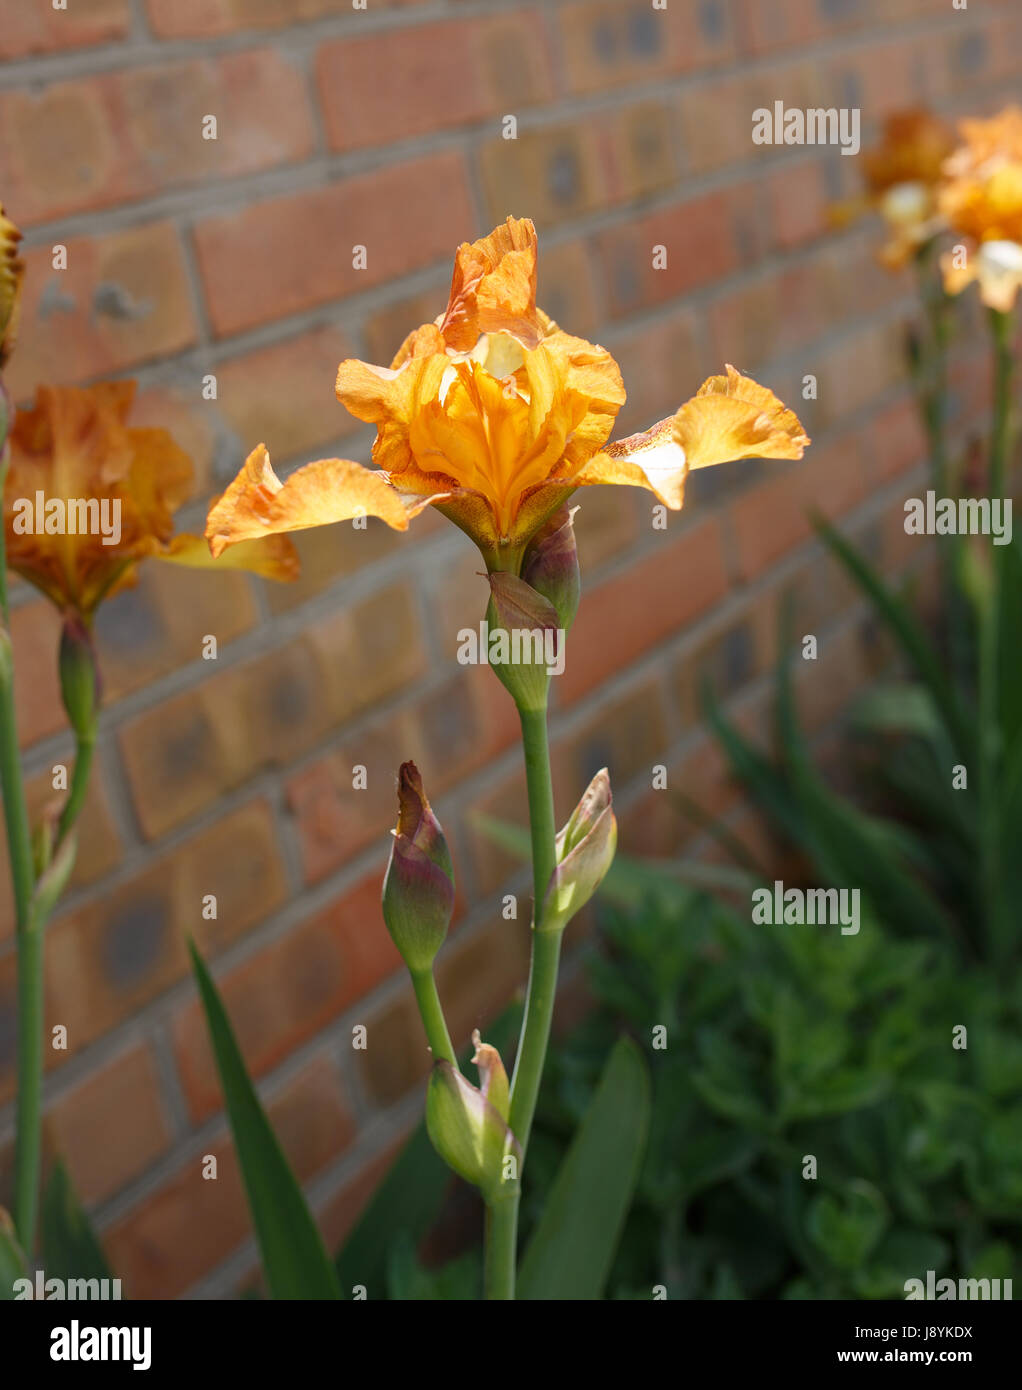 Flor de iris naranja cerca de foto, pequeño dof Foto de stock